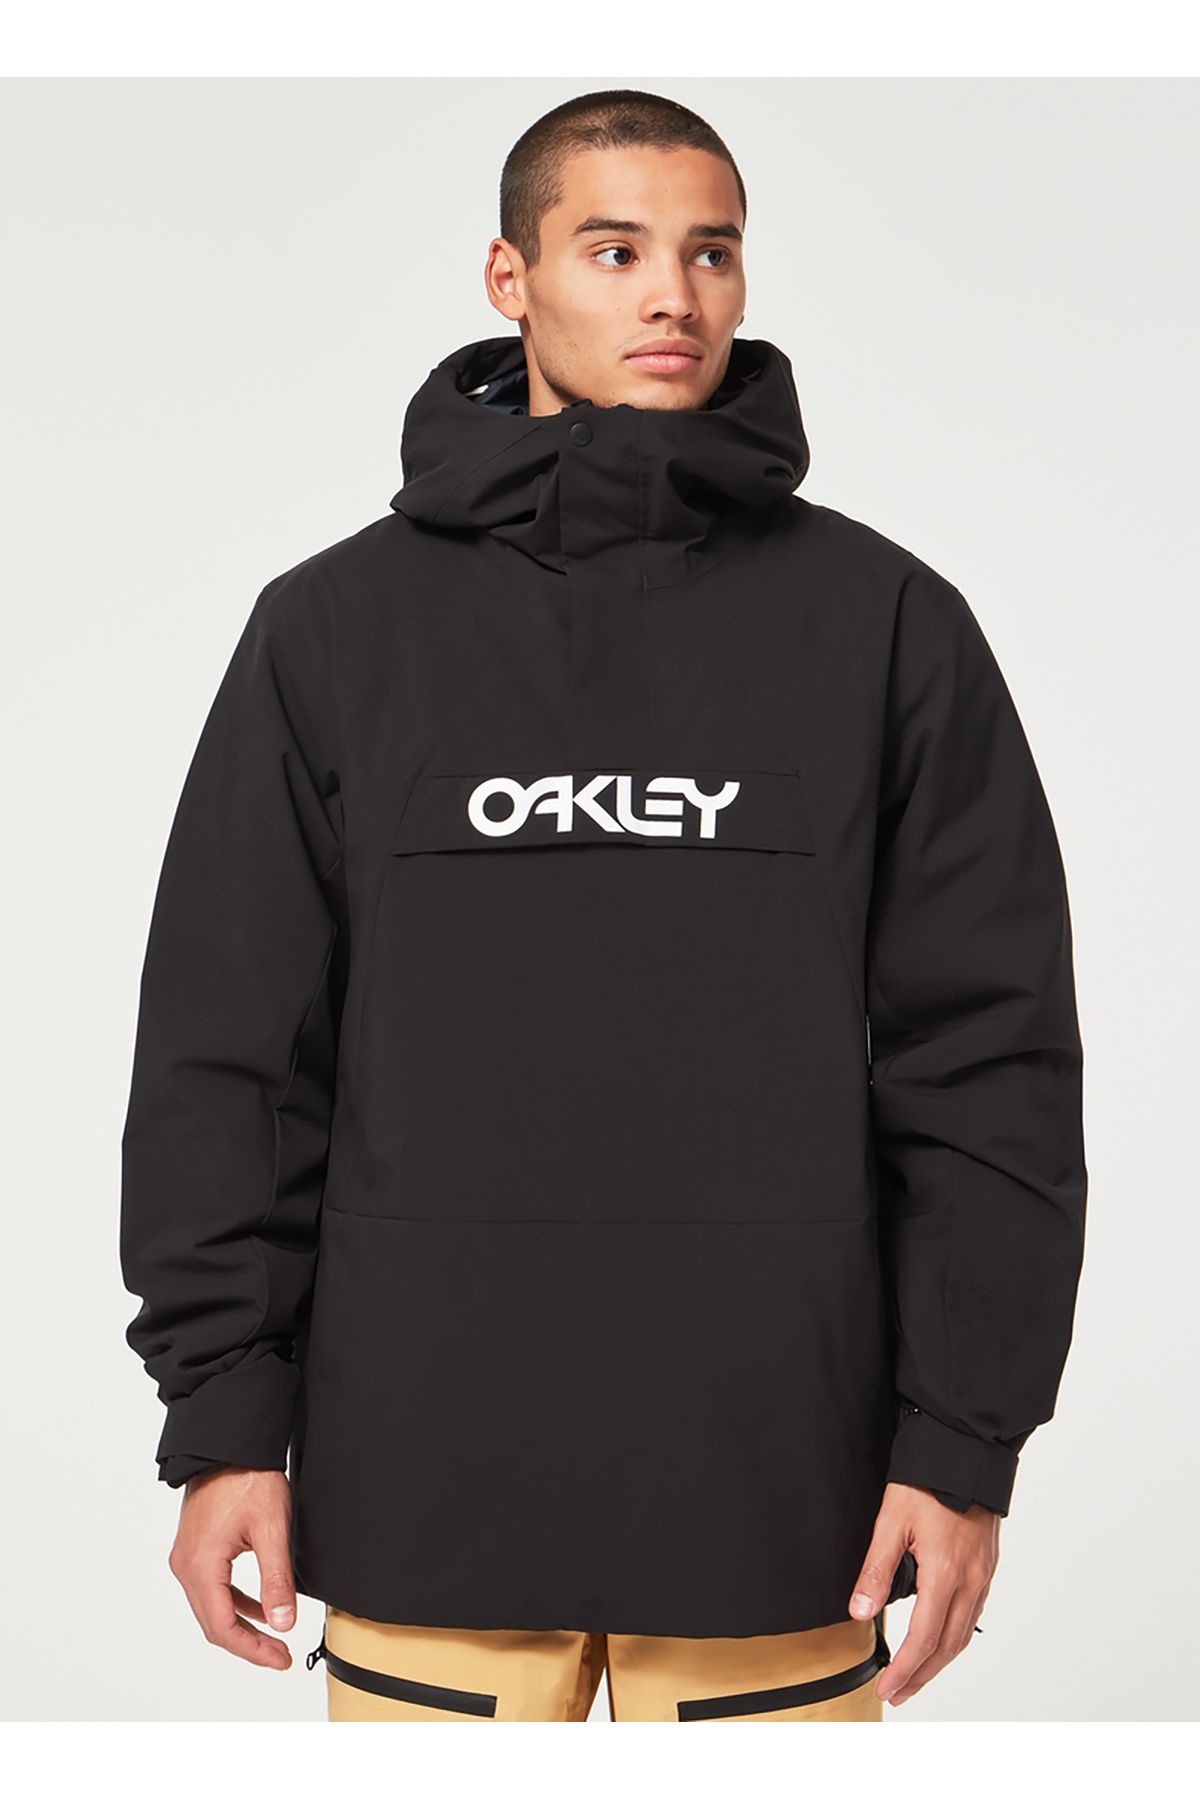 Oakley Siyah Erkek Kapüşonlu Baskılı Kayak Montu FOA403652 TNP TBT INSULATED ANORAK